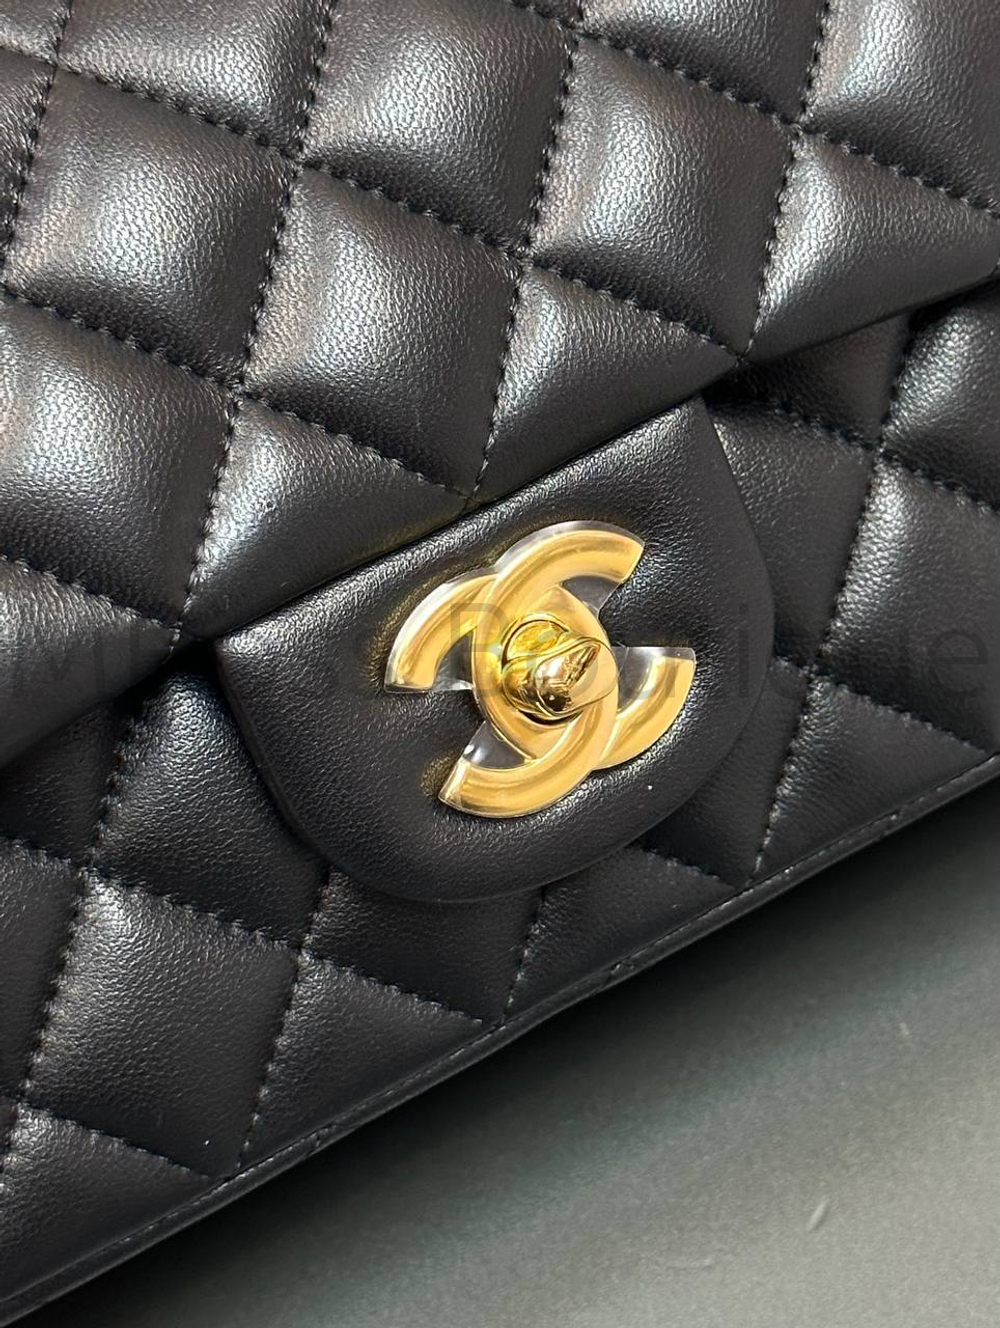 Маленькая черная сумка конверт Chanel (Шанель) премиум класса из гладкой кожи